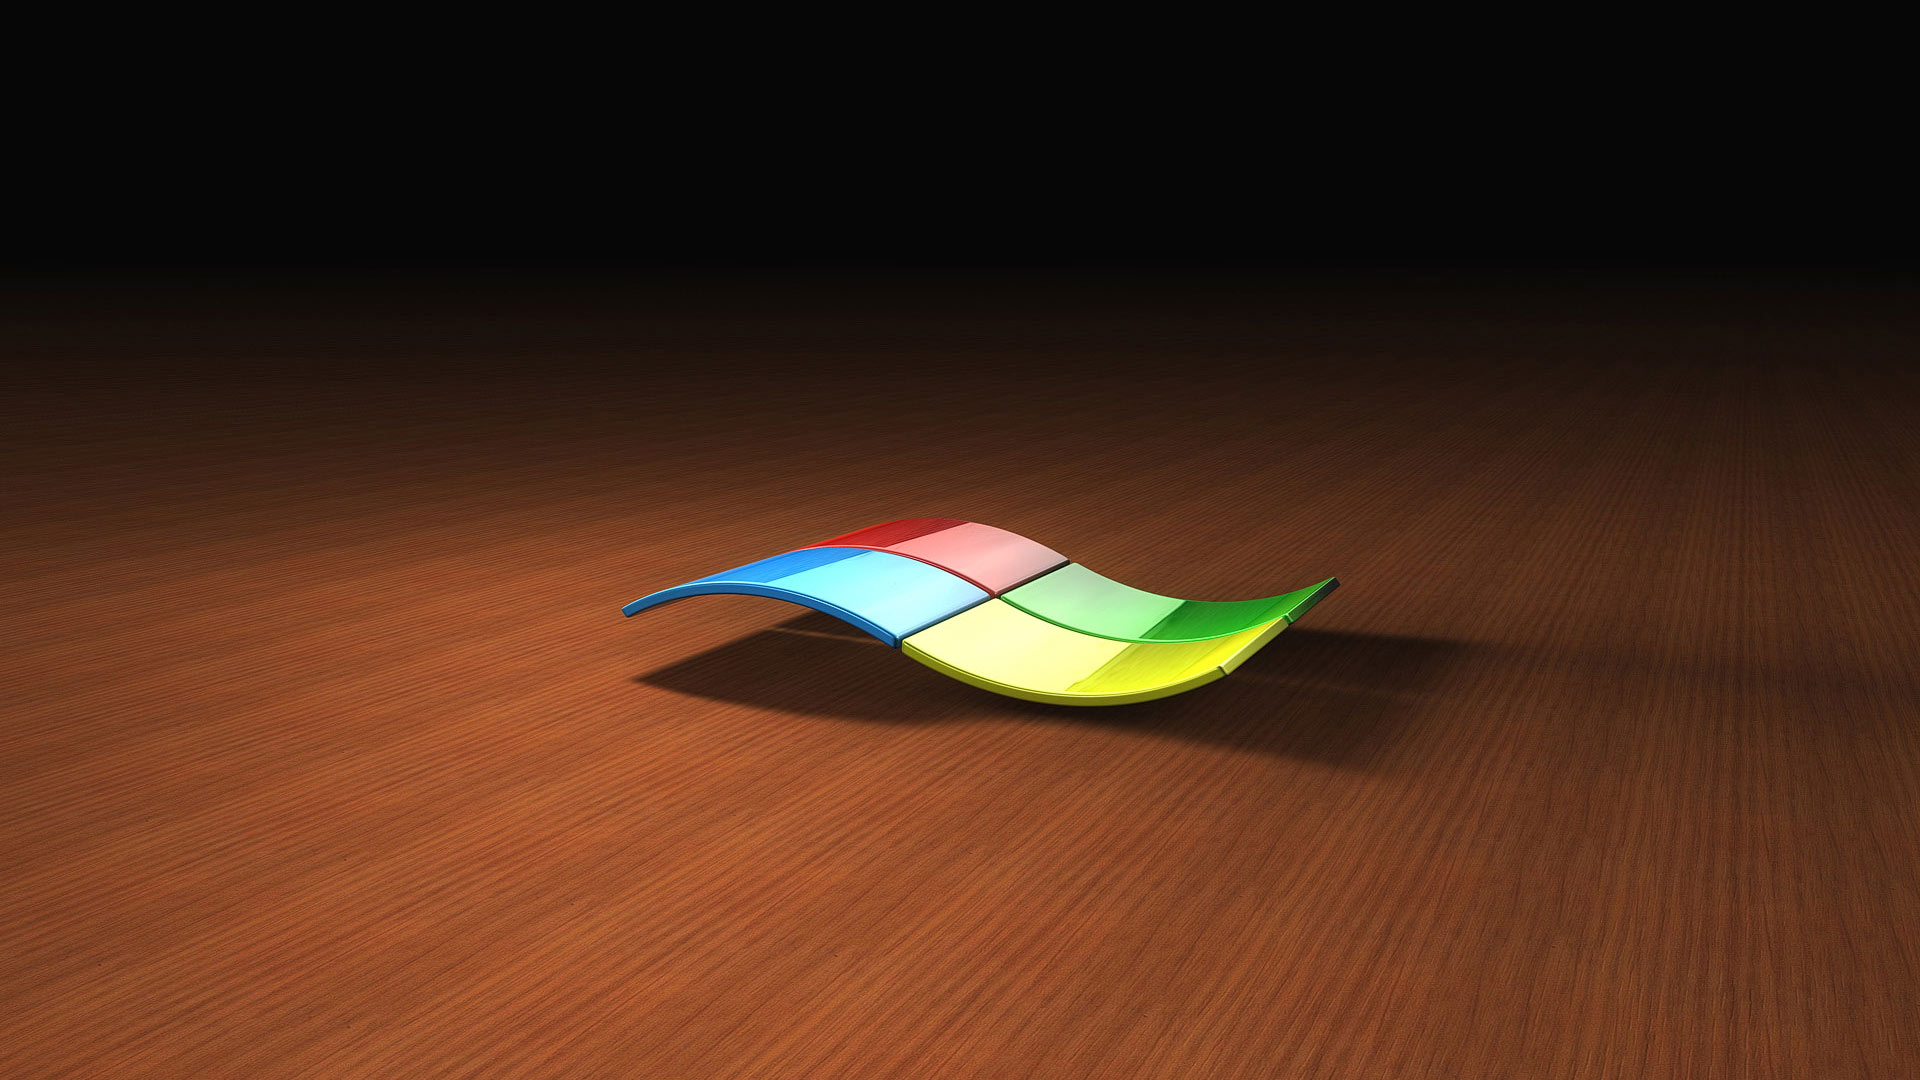 Bản thiết kế mới nhất của hình nền 3D Microsoft Windows sẽ khiến cho bạn hài lòng với trải nghiệm hiệu ứng đẹp mắt và không gian sâu. Hãy tải ngay để được trải nghiệm những hiệu ứng độc đáo của hình nền 3D này.